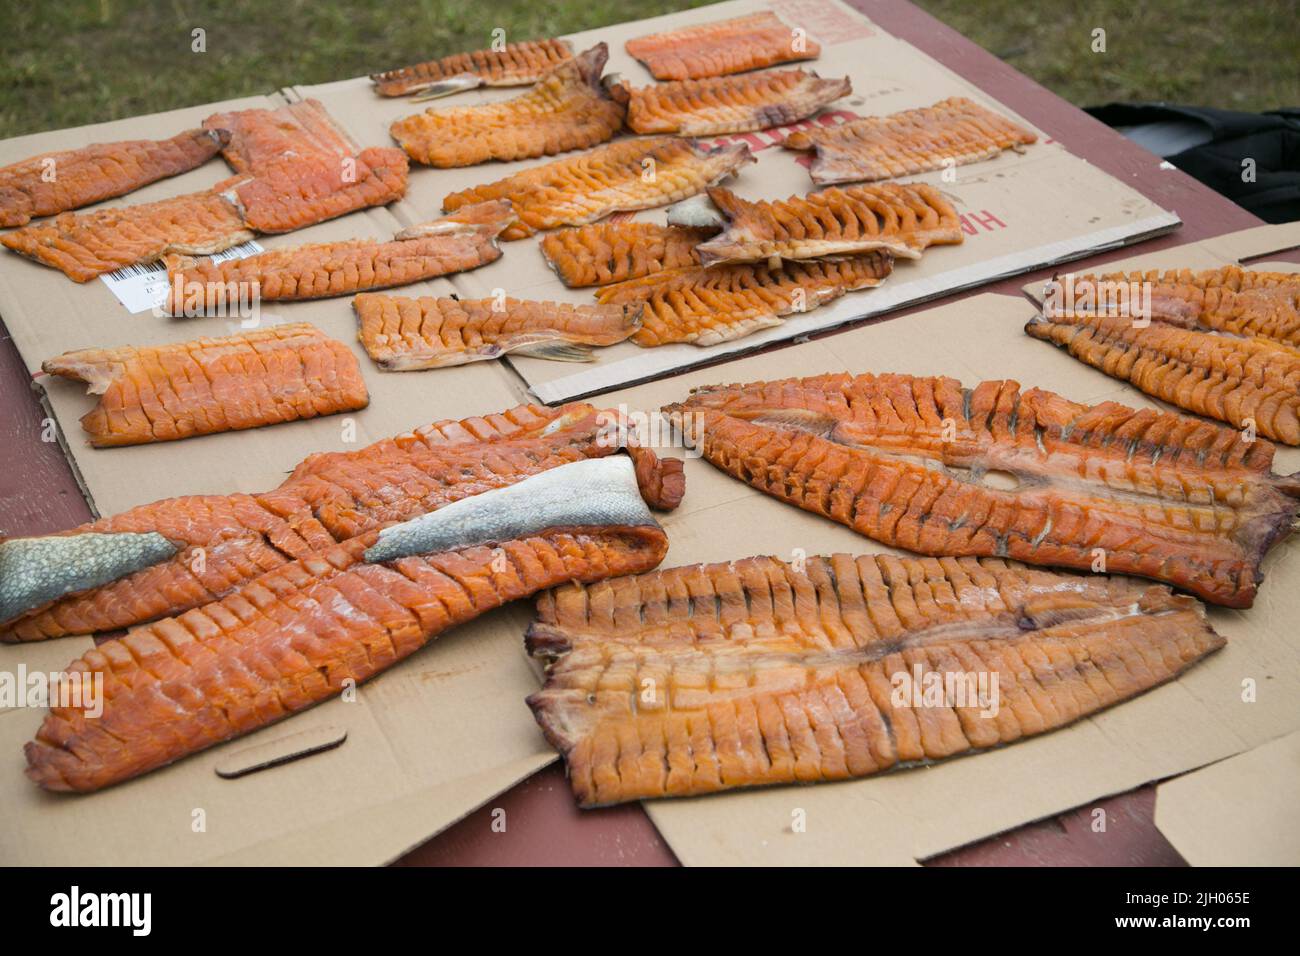 Filetti di pesce (trota del lago) preparati per fumare, nella comunità indigena settentrionale di Deline, territori del nord-ovest, Canada. Foto Stock